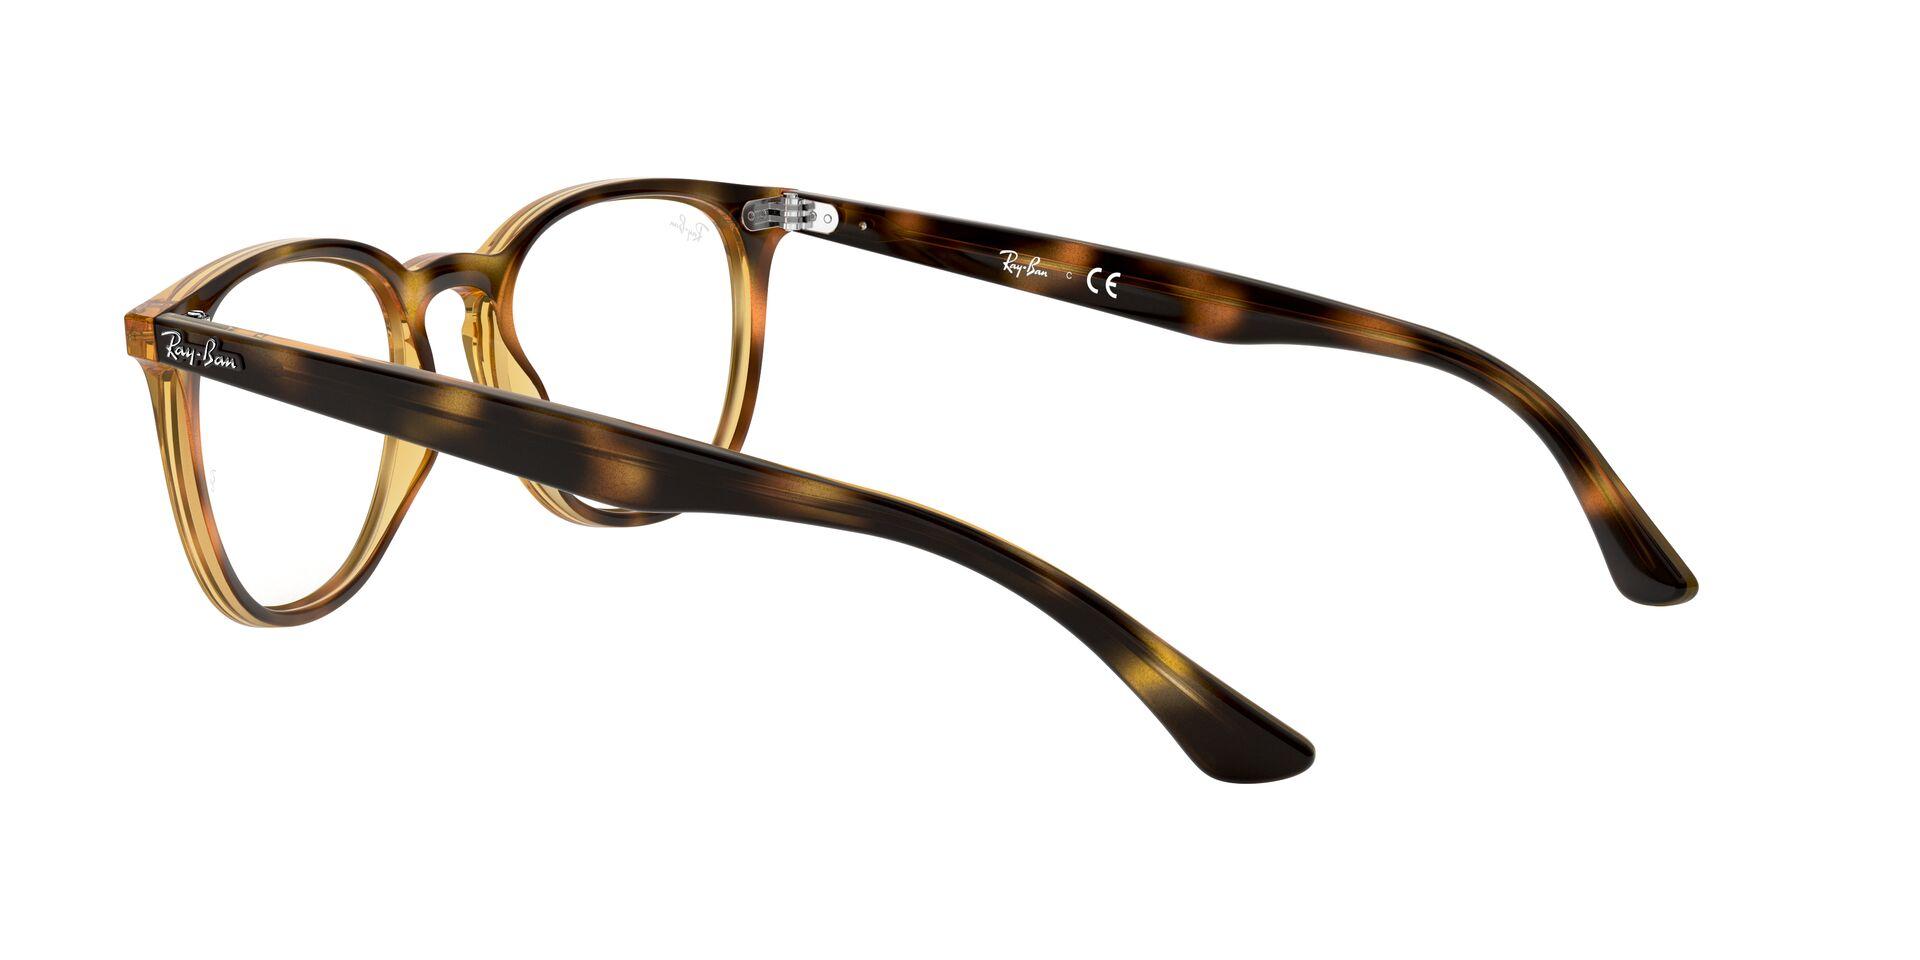 Mắt Kính Ray-Ban  - RX7159F 2012 -Eyeglasses